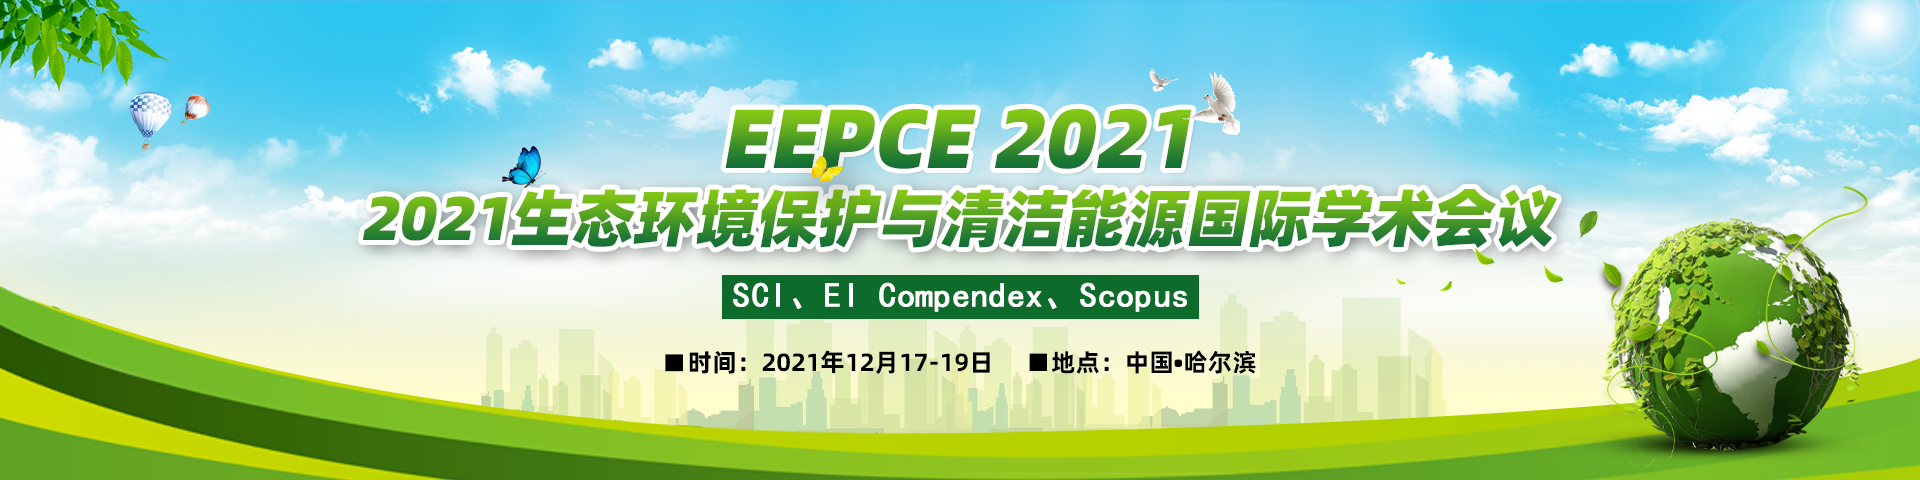 12月-EEPCE 2021-banner中-何霞丽-20210329.png